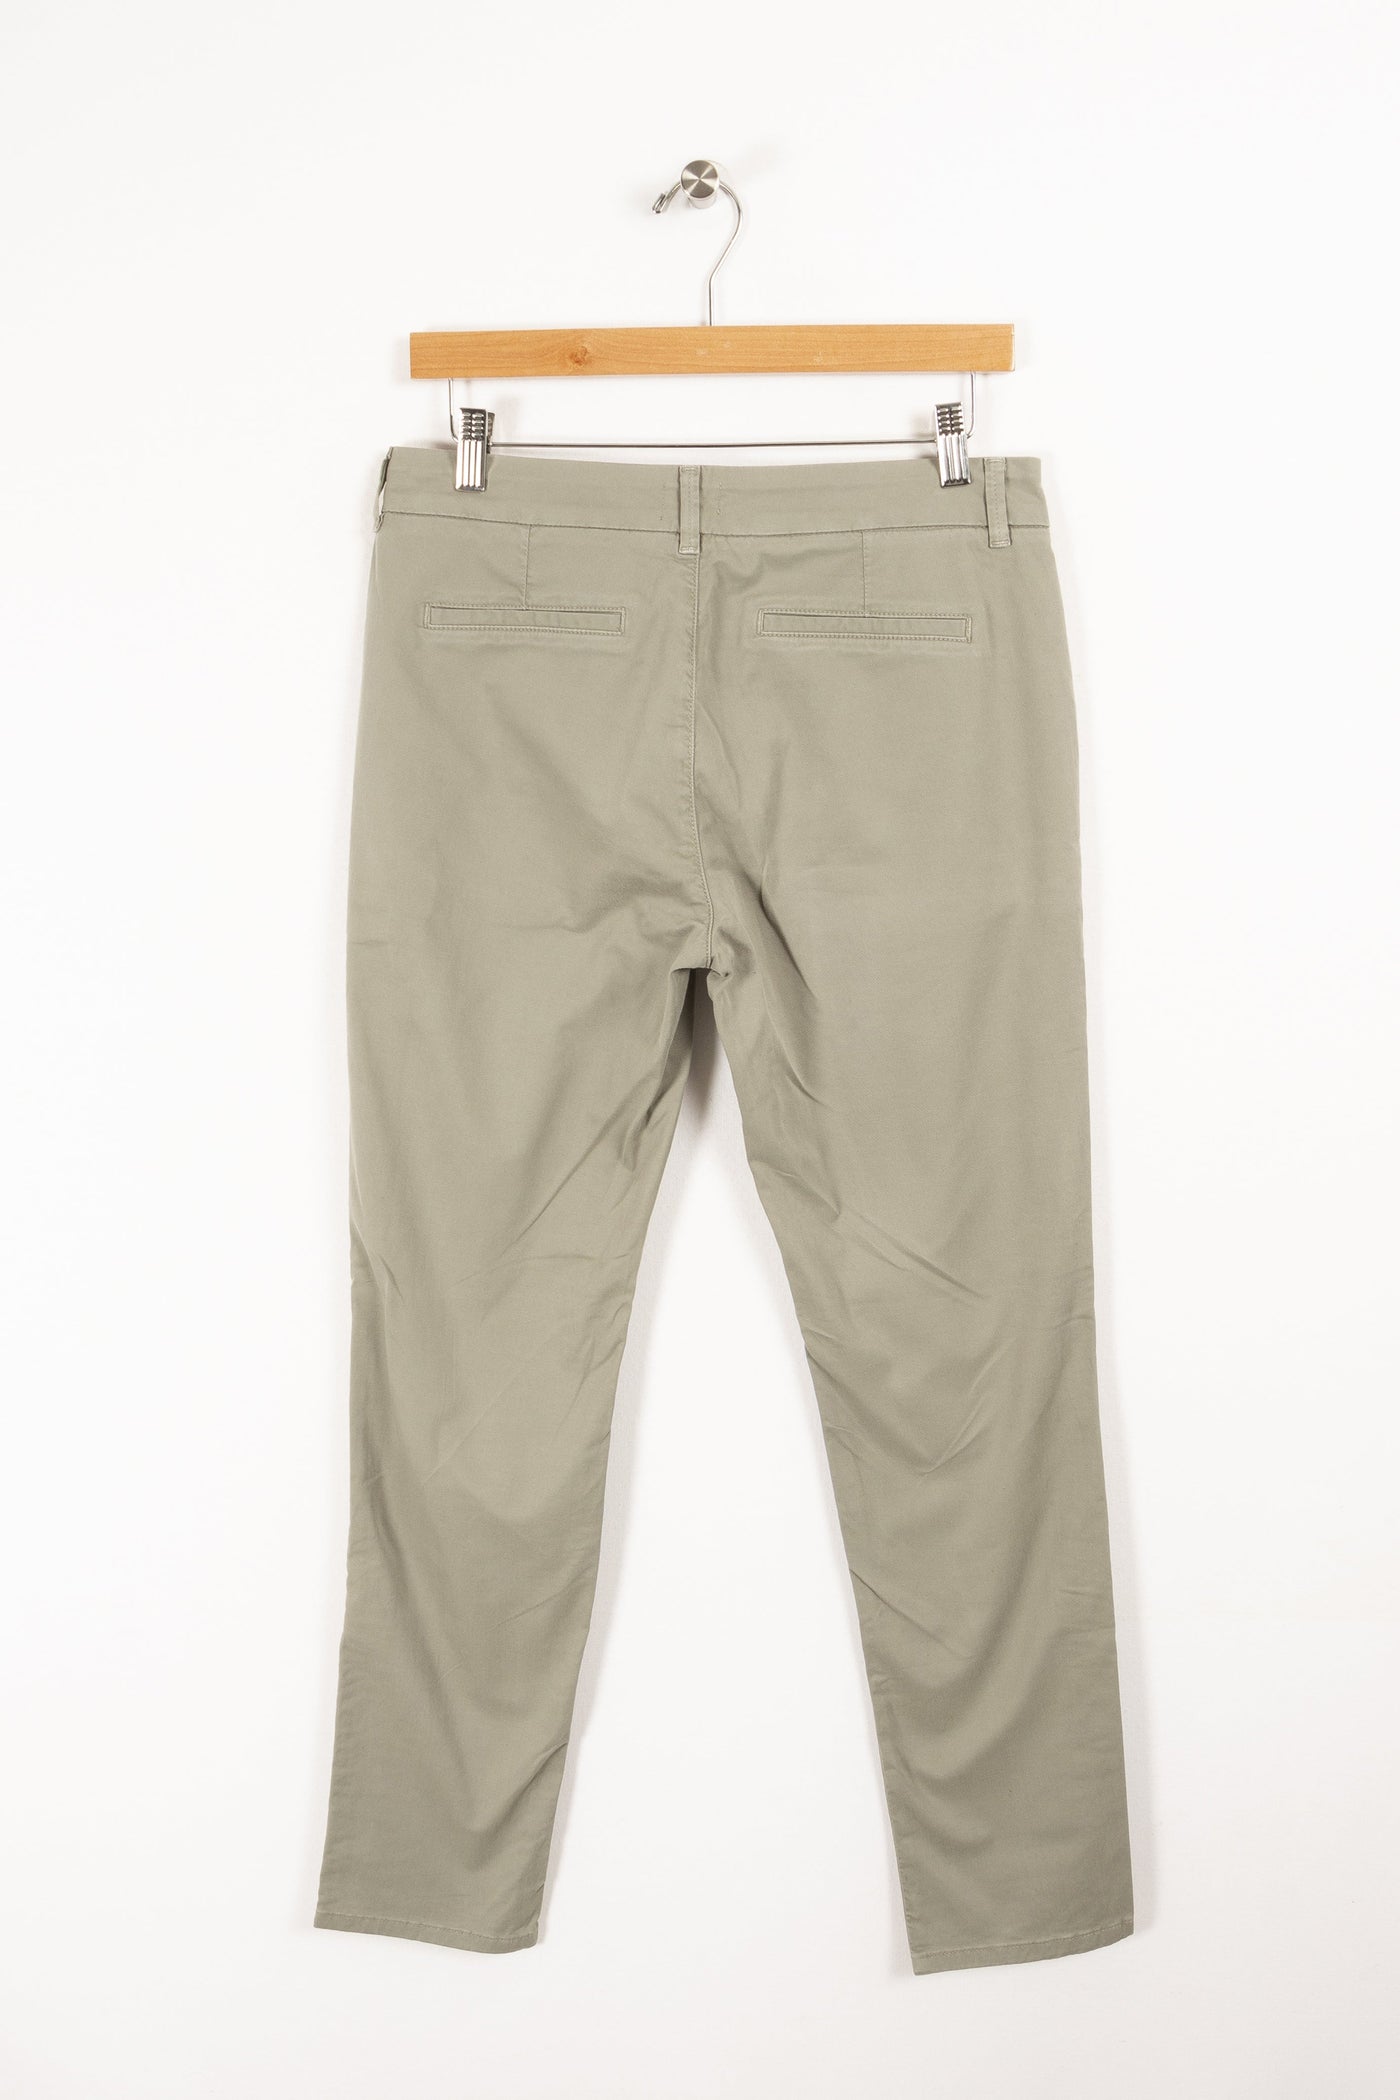 Pantalon en jean vert - Taille M/38